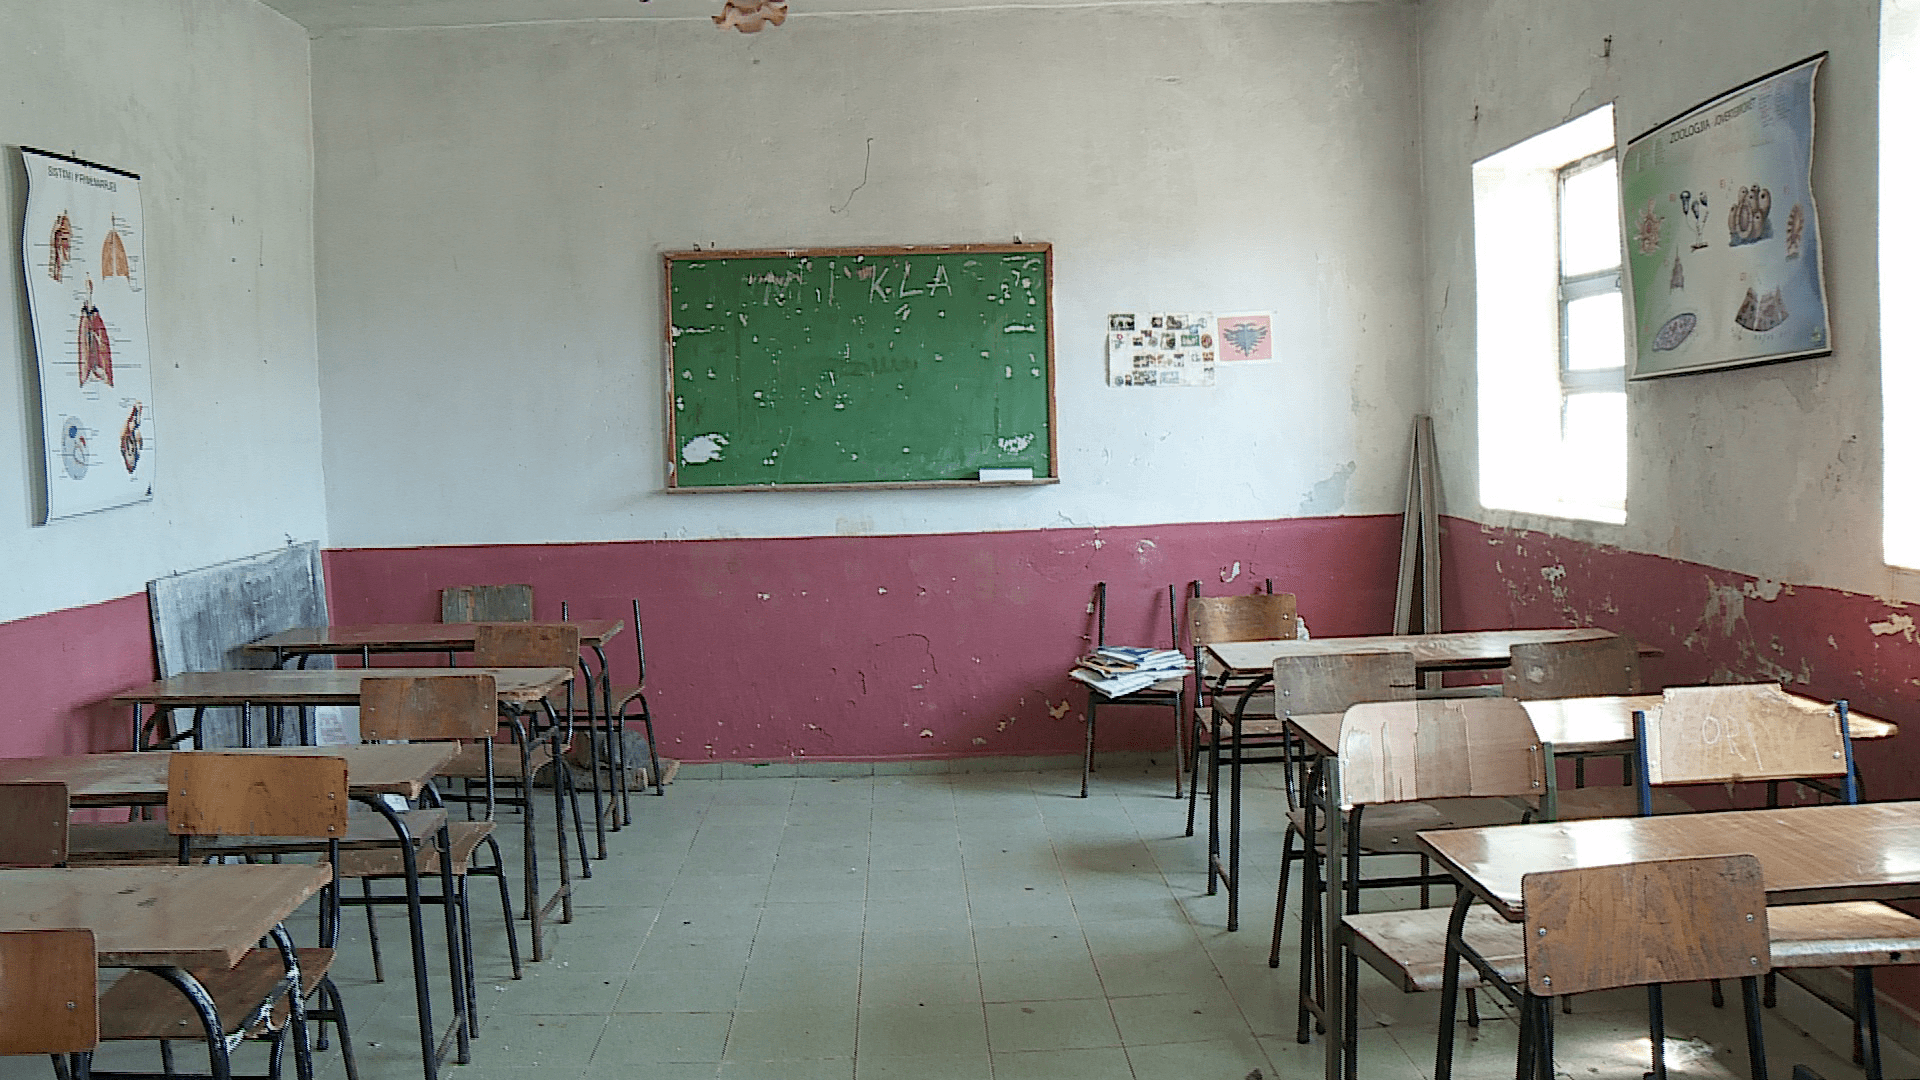 Klasë në shkollën e mesme të Iballës. Foto: E. GJ / Citizens Channel